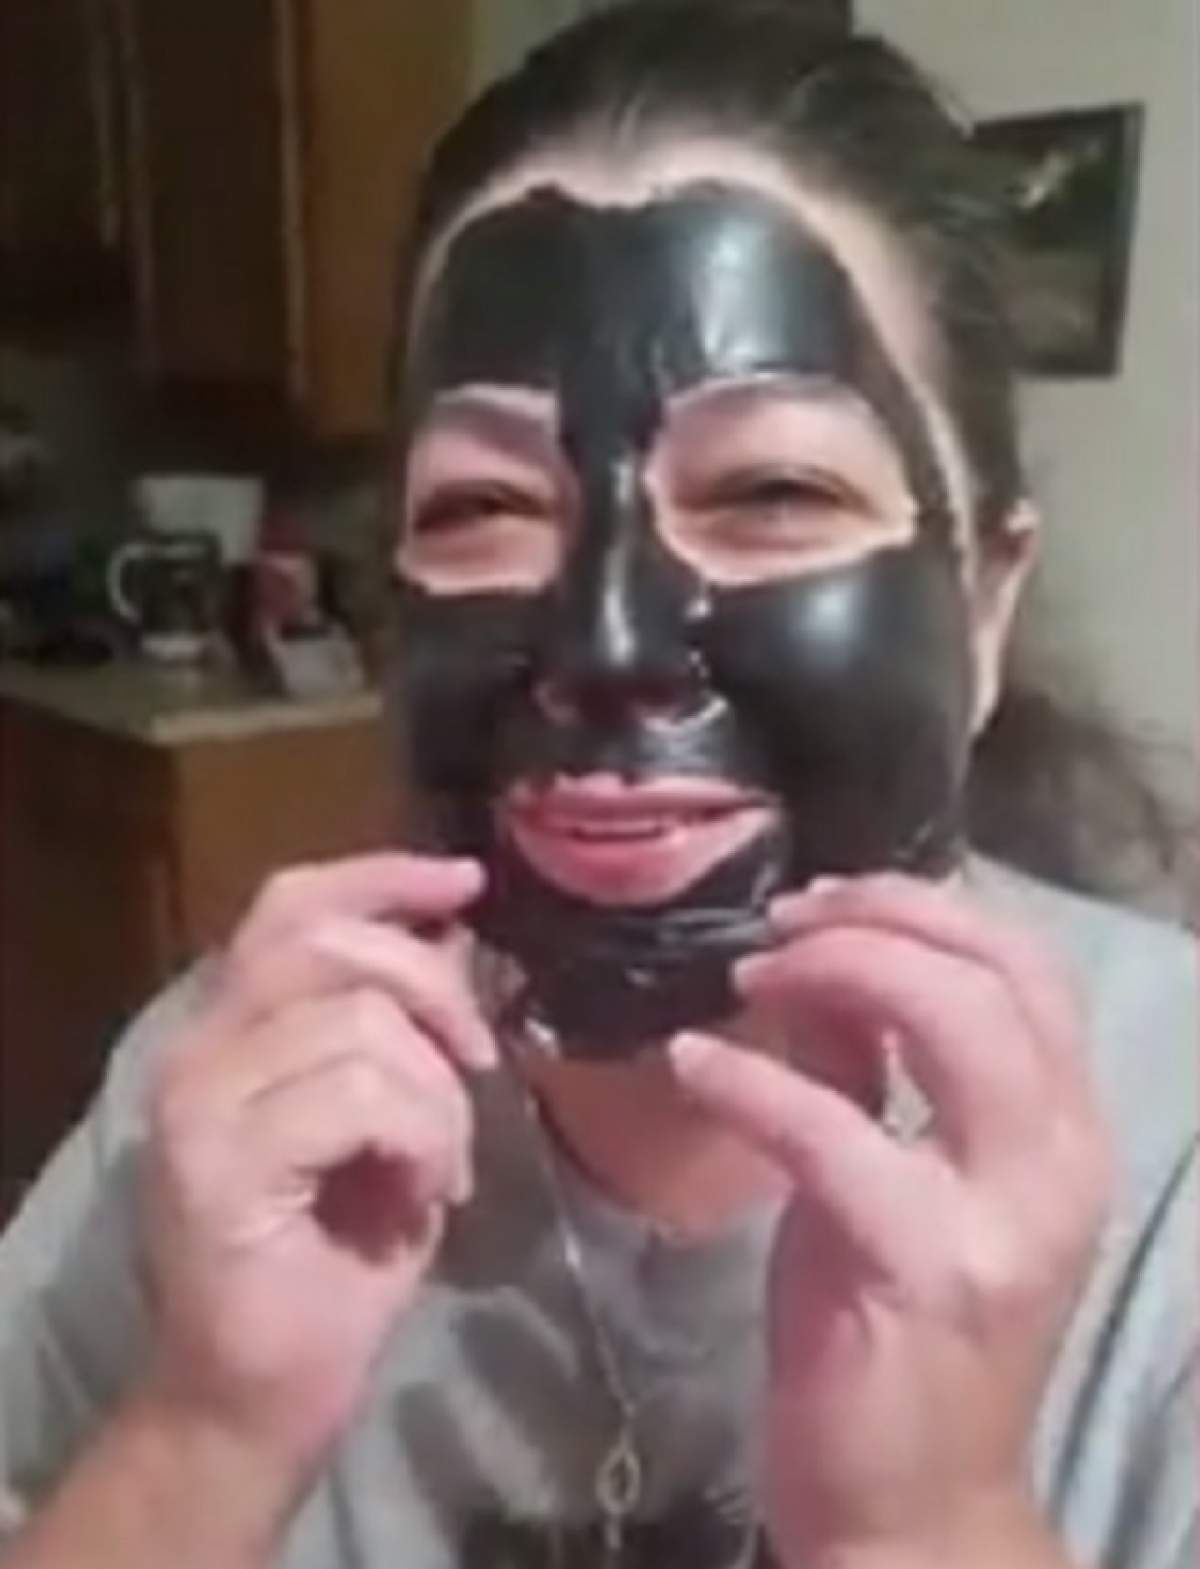 VIDEO / Şi-a aplicat o mască pe faţă, dar când a îndepărtat-o a început să plângă! "Nu ştiu ce a fost în capul meu"